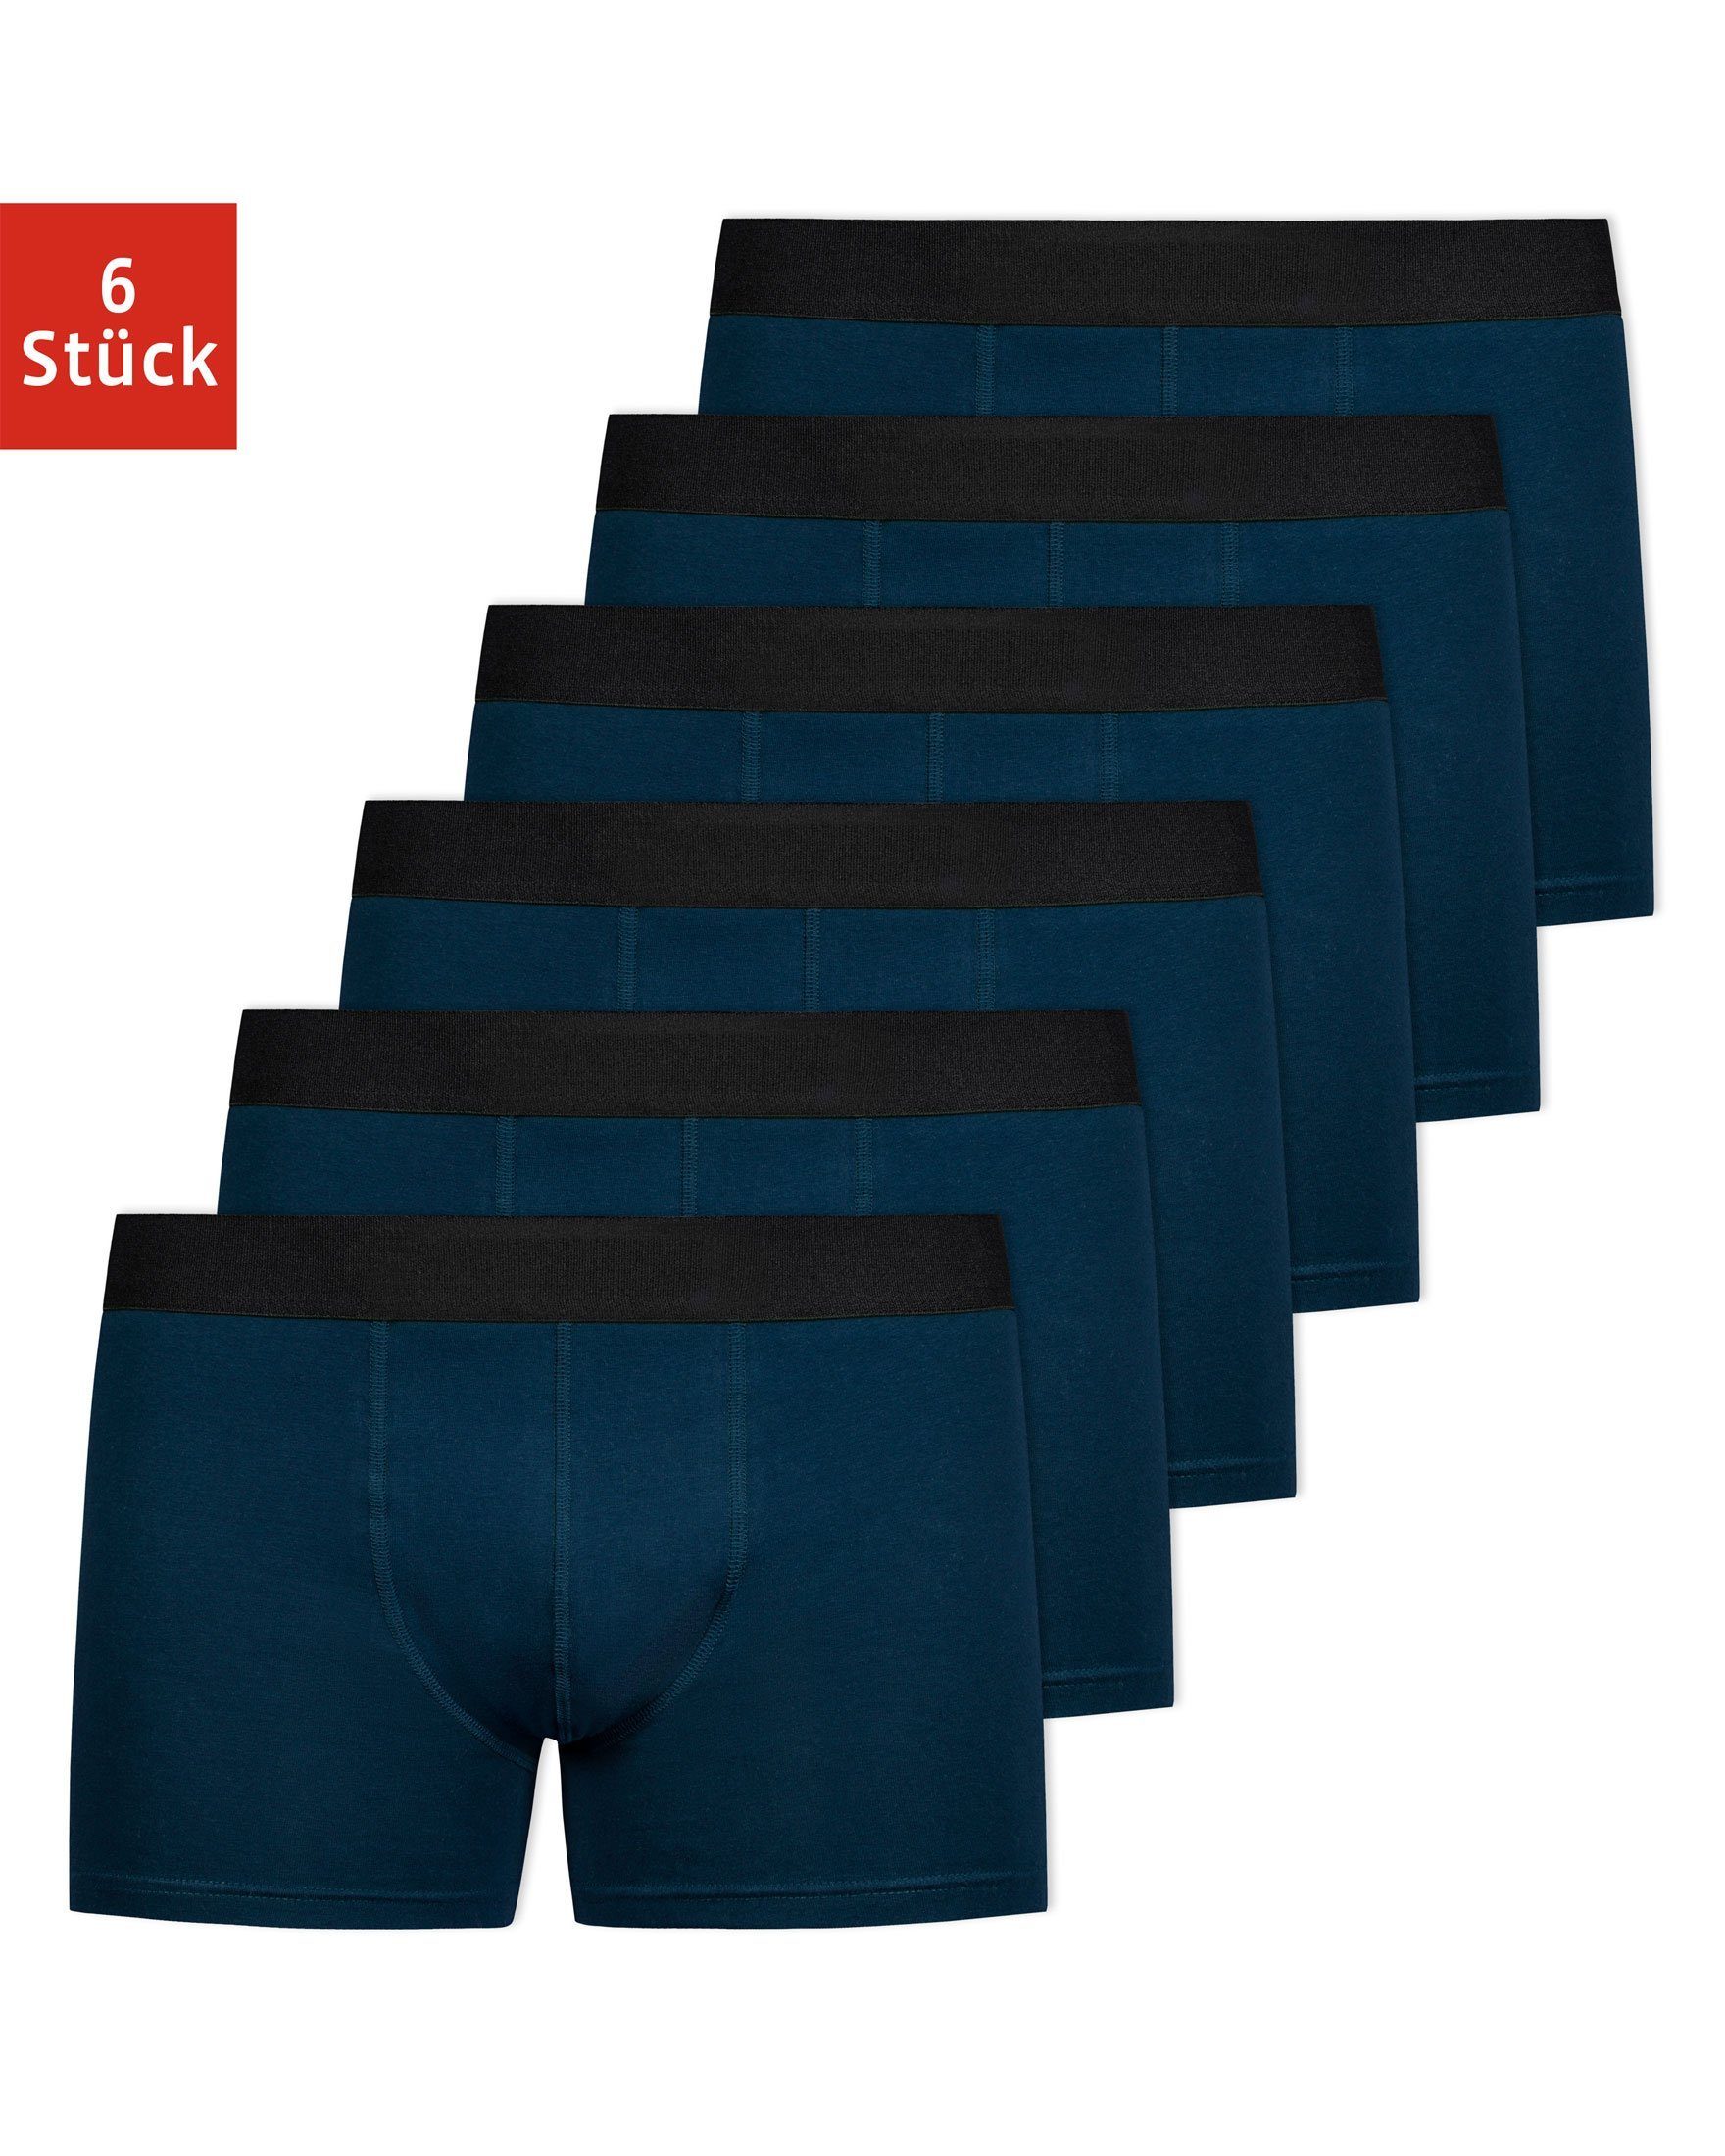 SNOCKS Boxershorts ohne Logo Enge Unterhosen Herren Männer (6-St) aus Bio- Baumwolle, ohne kratzenden Zettel